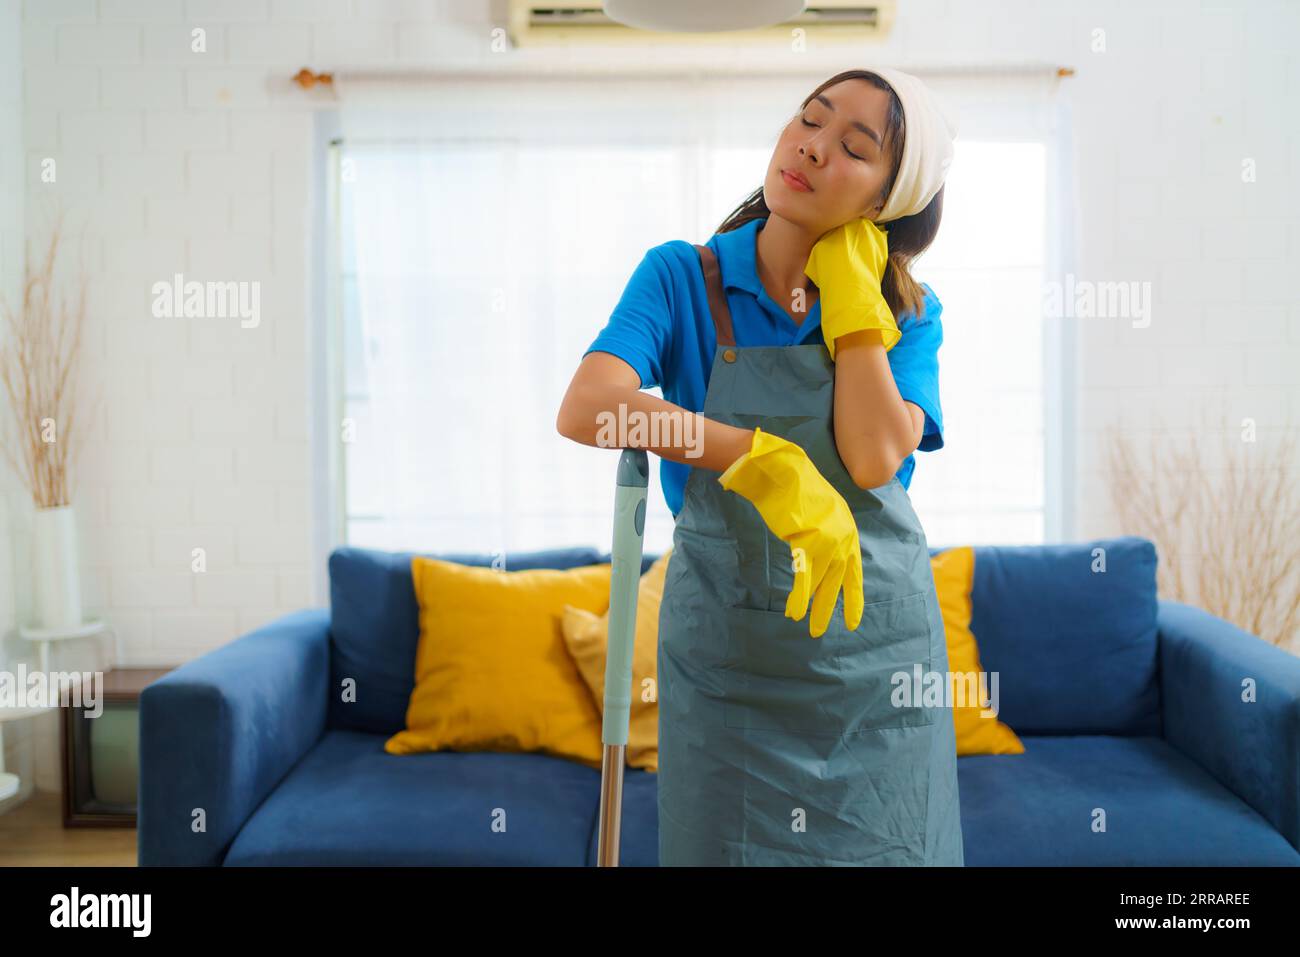 Une femme de ménage asiatique déterminée combat la fatigue, serpillière à la main. Chaque coup raconte une histoire de résilience et d’engagement dans la poursuite de la propreté. Banque D'Images